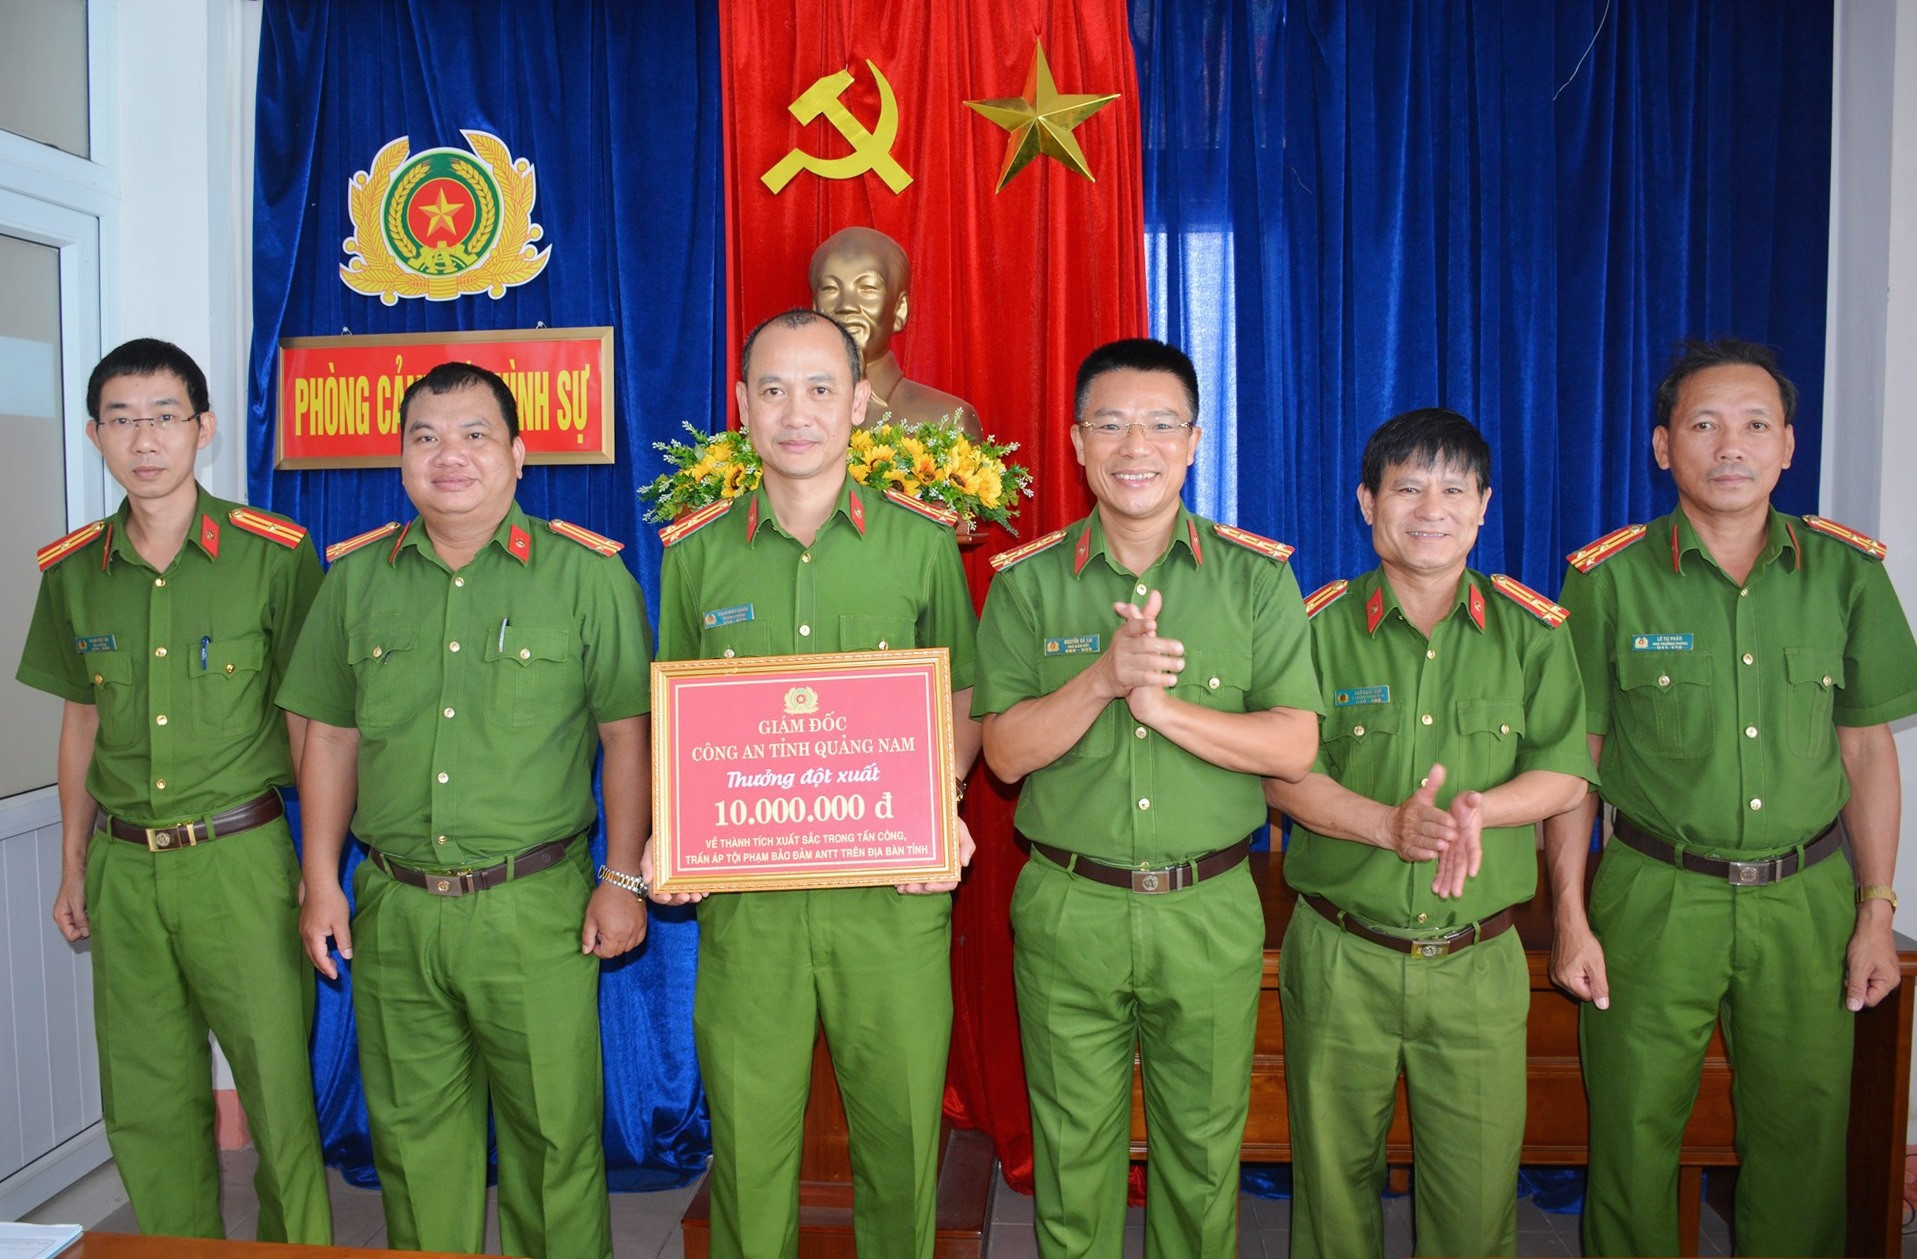 Đại tá Nguyễn Hà Lai thưởng nóng cho Phòng Cảnh sát hình sự sau khi xuất sắc điều tra, làm rõ thủ phạm vụ án mạng.